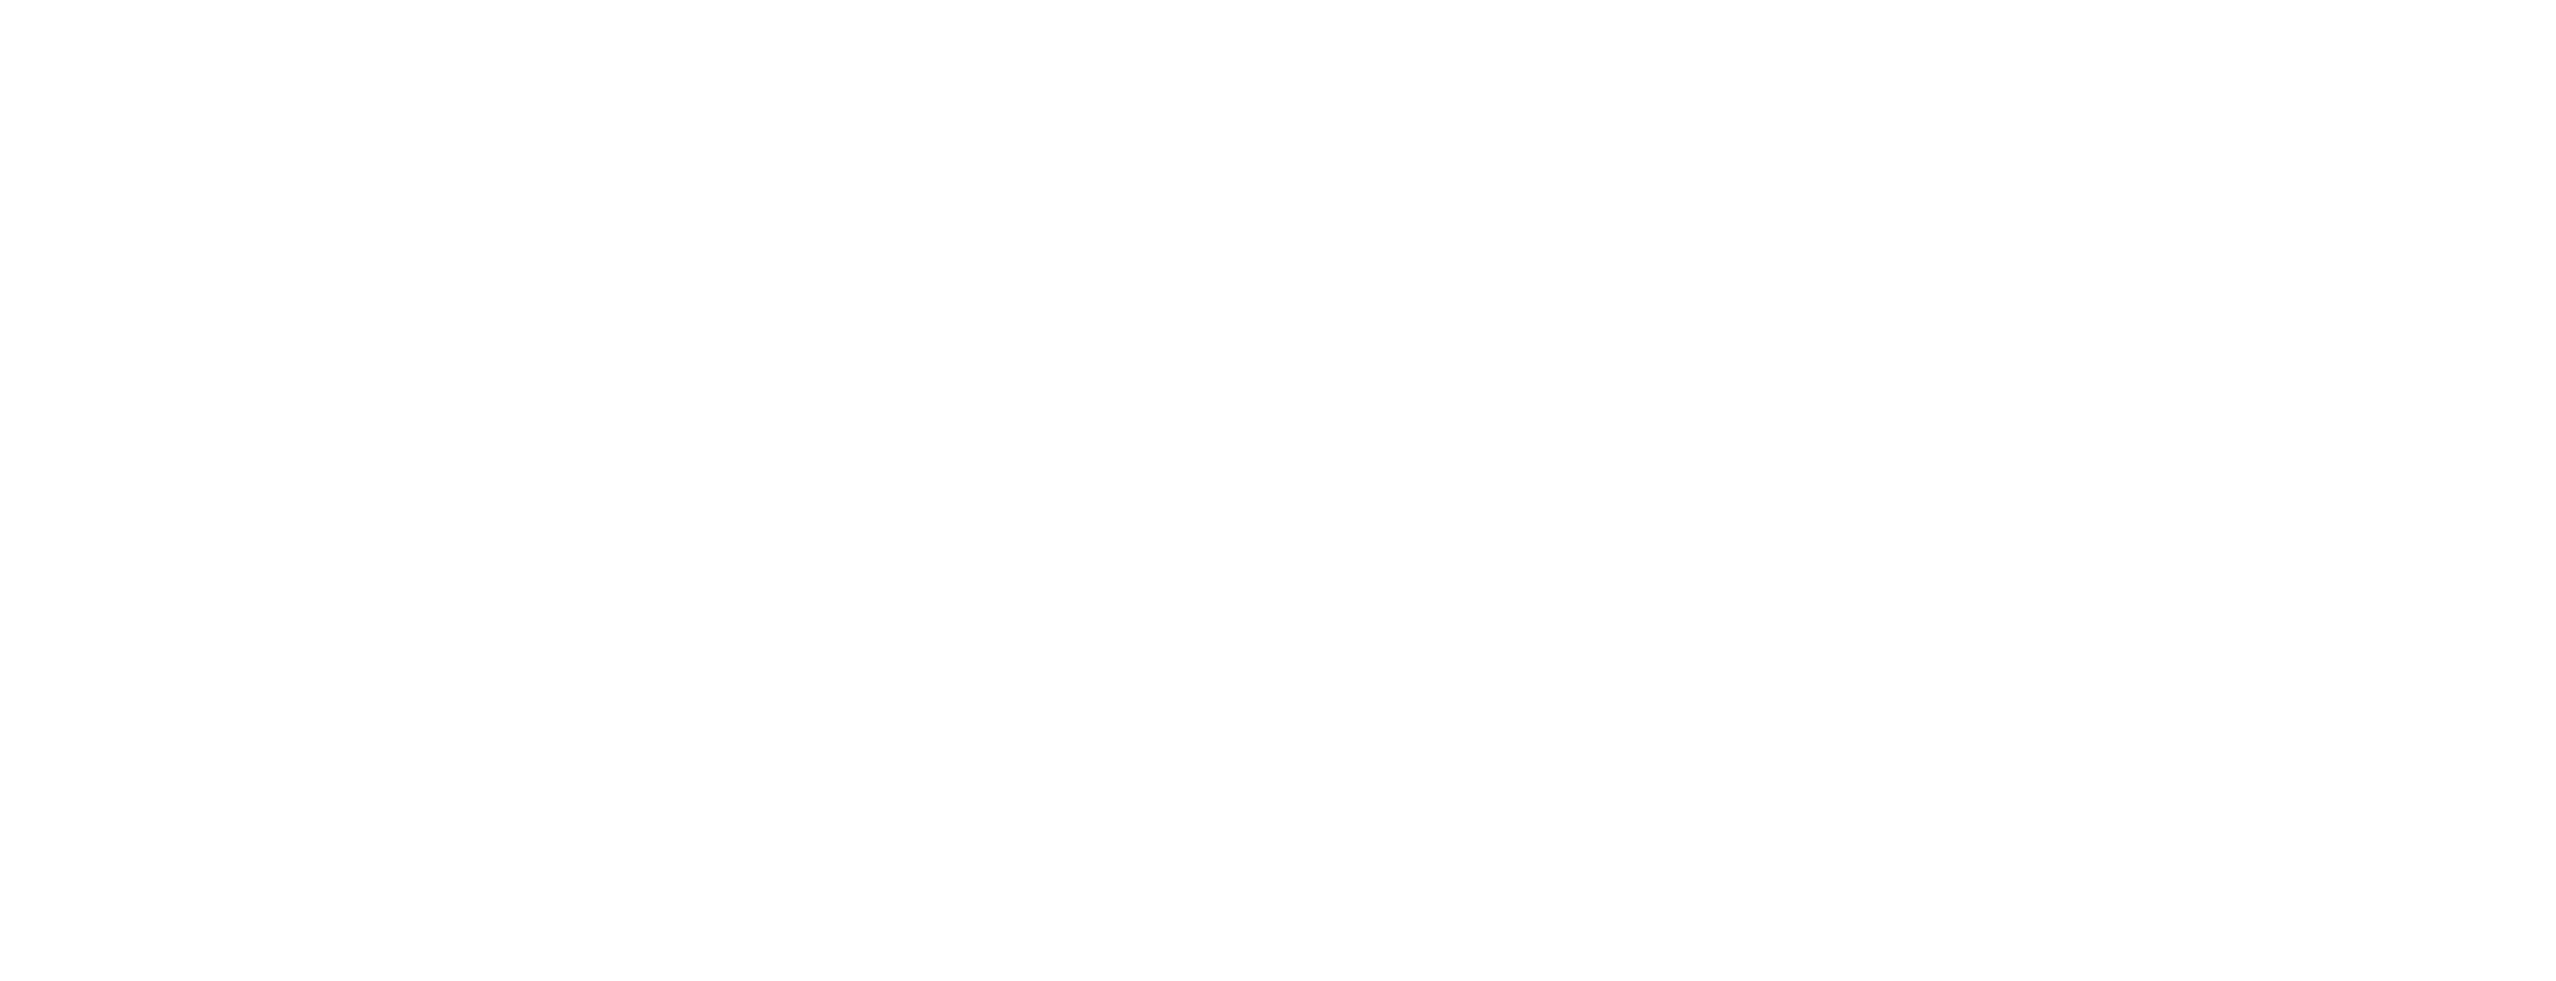 //veinco.com.mx/wp-content/uploads/2018/10/logo_blanco.png